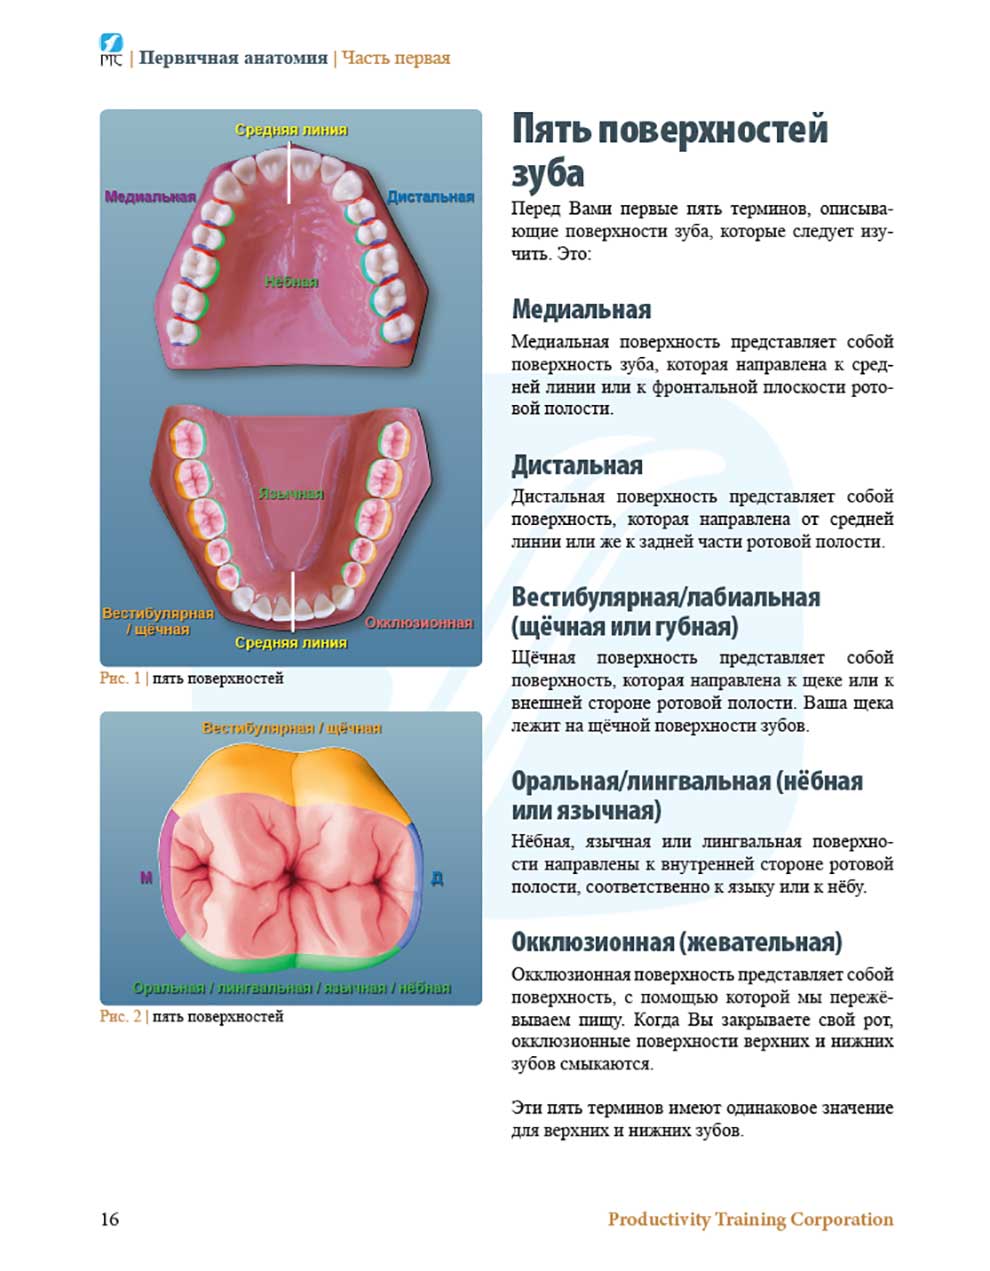 Пять поверхностей зуба